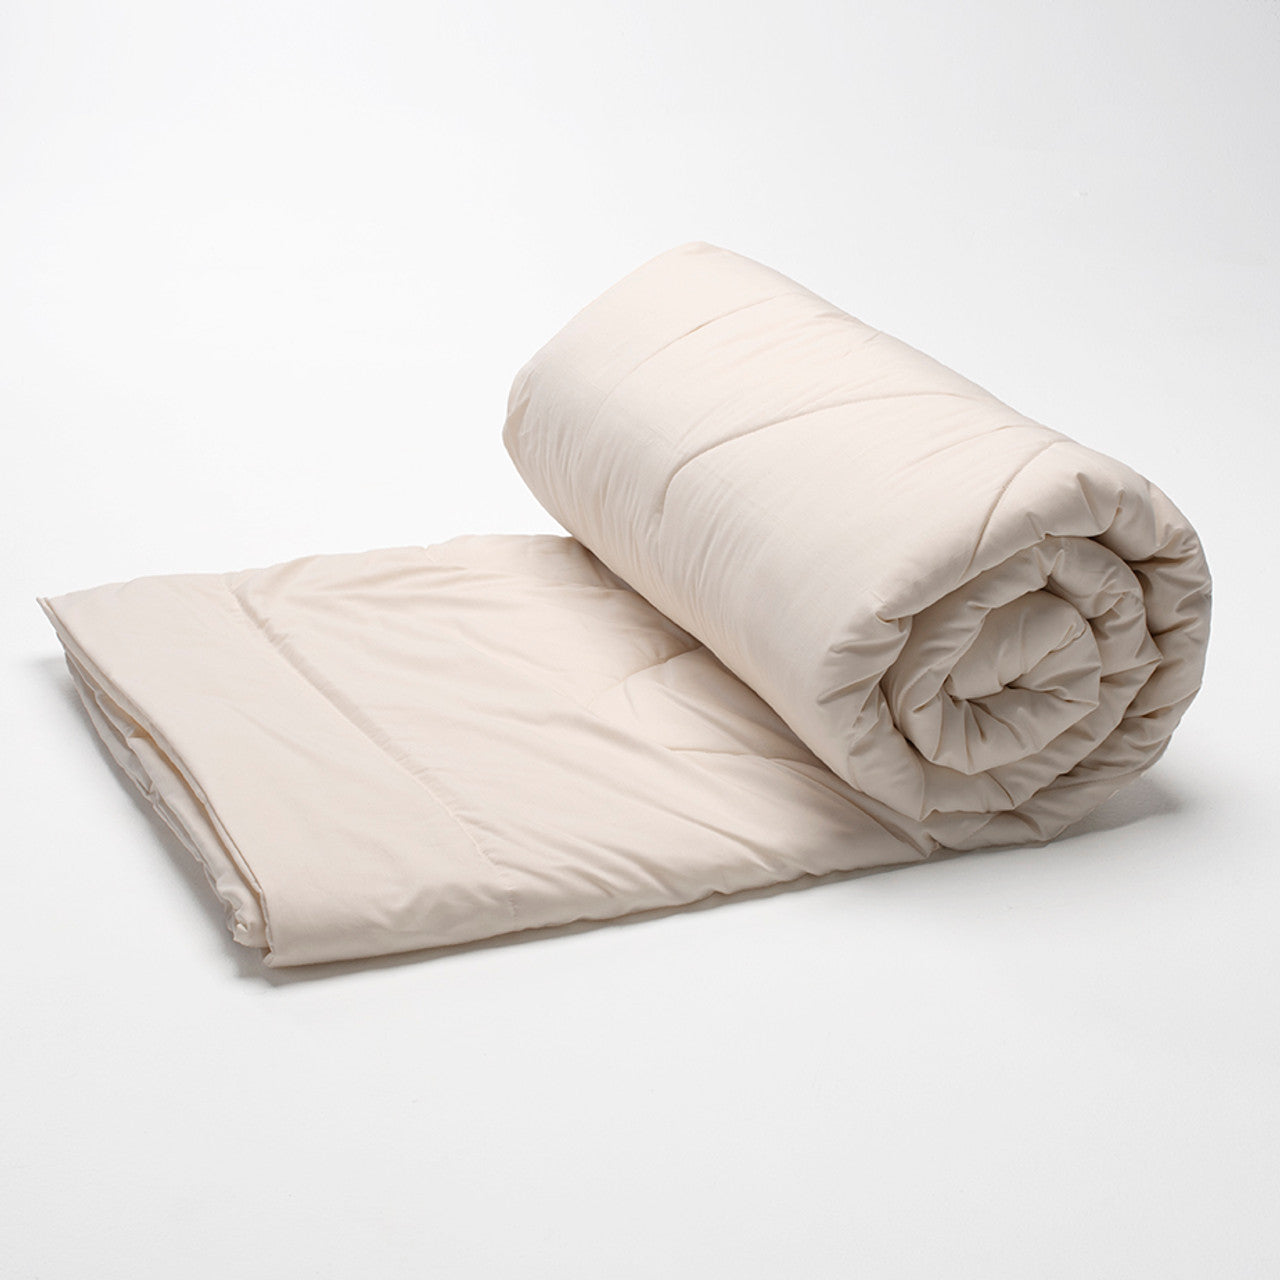 Suite Sleep Washable Wool Comforters